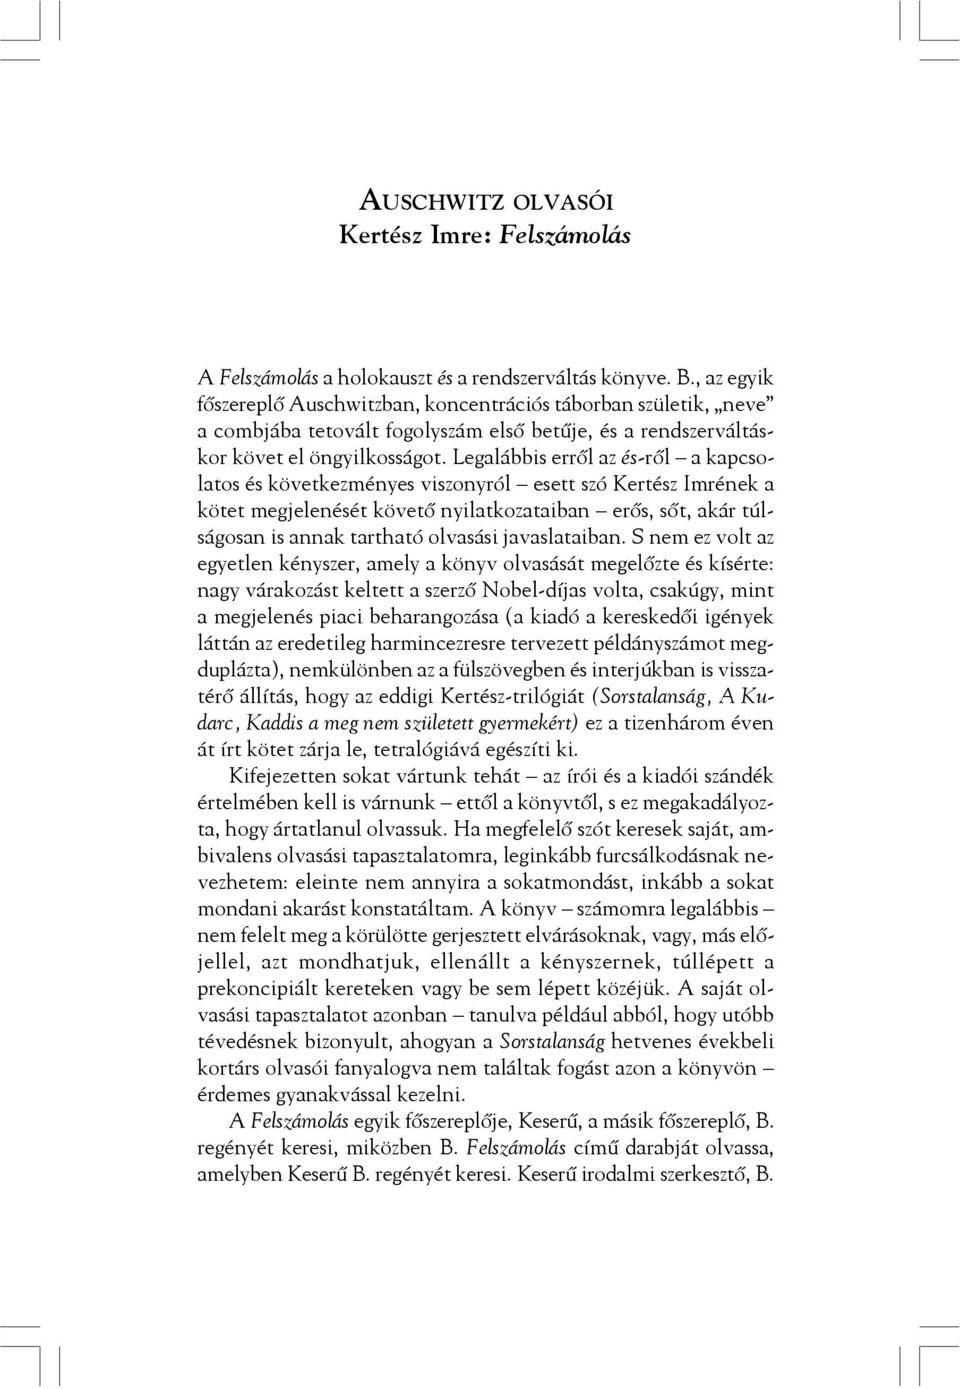 Legalábbis errõl az és-rõl a kapcsolatos és következményes viszonyról esett szó Kertész Imrének a kötet megjelenését követõ nyilatkozataiban erõs, sõt, akár túlságosan is annak tartható olvasási